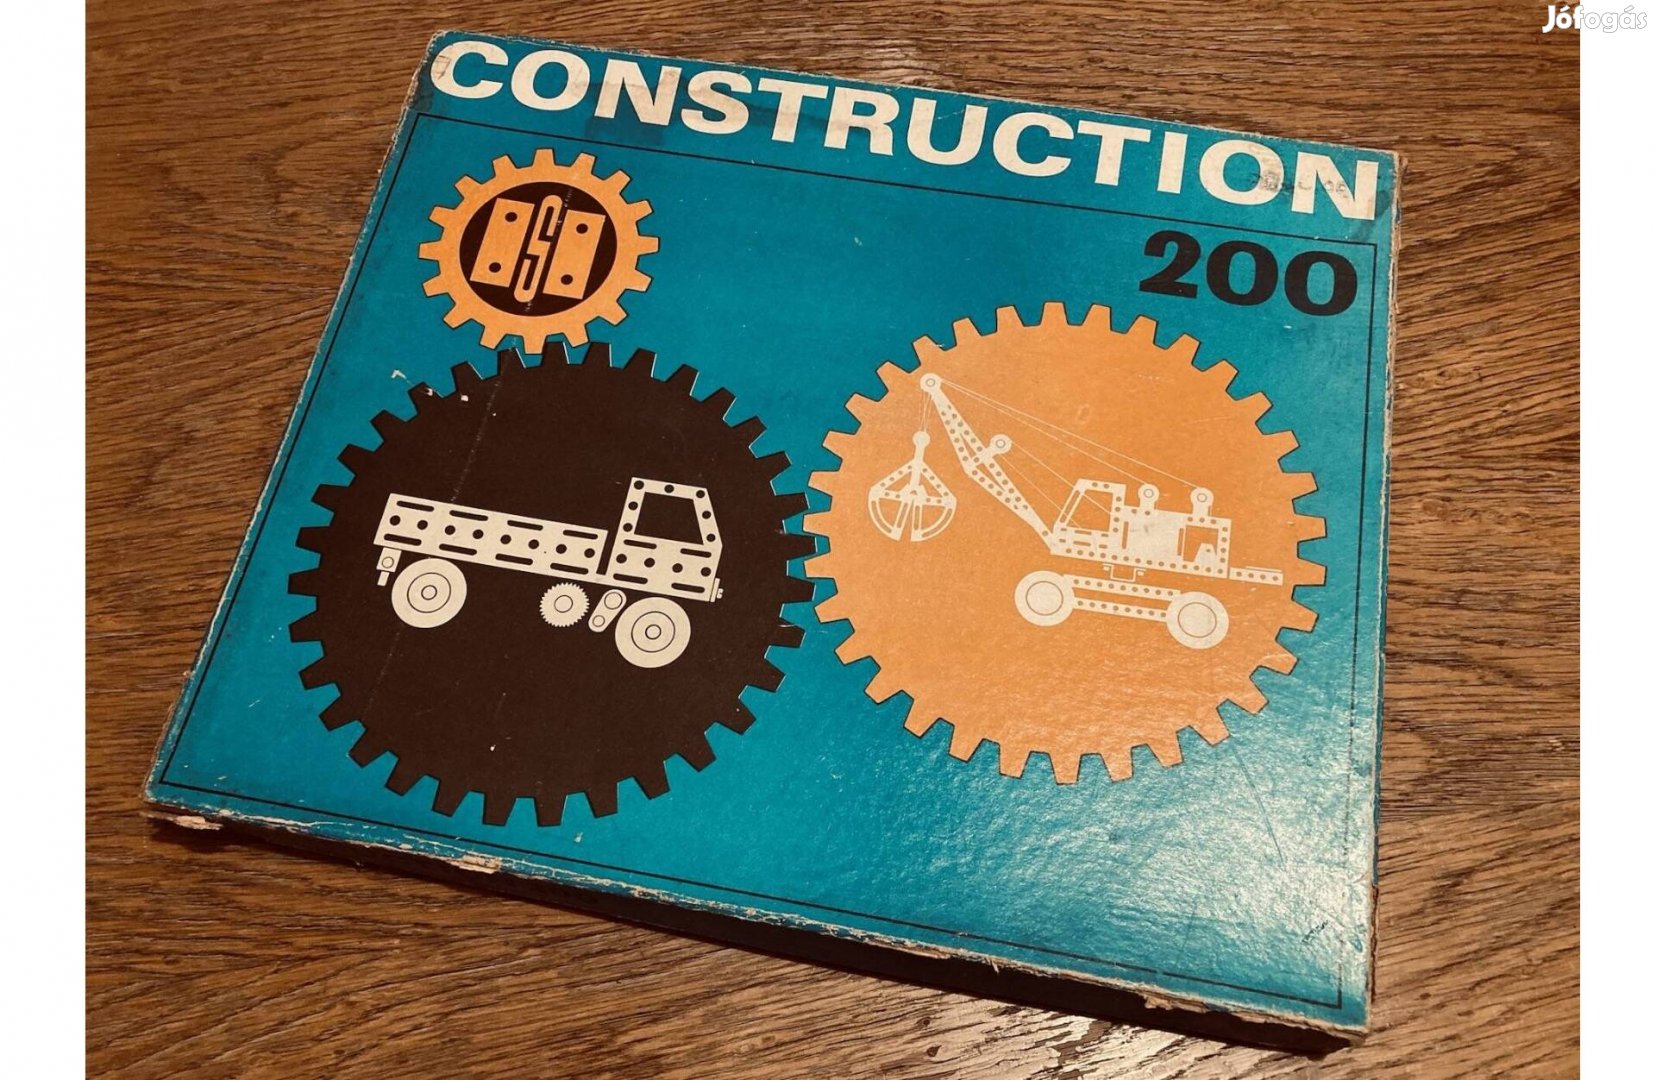 A kultikus Construction 200 fémösszerakó játék